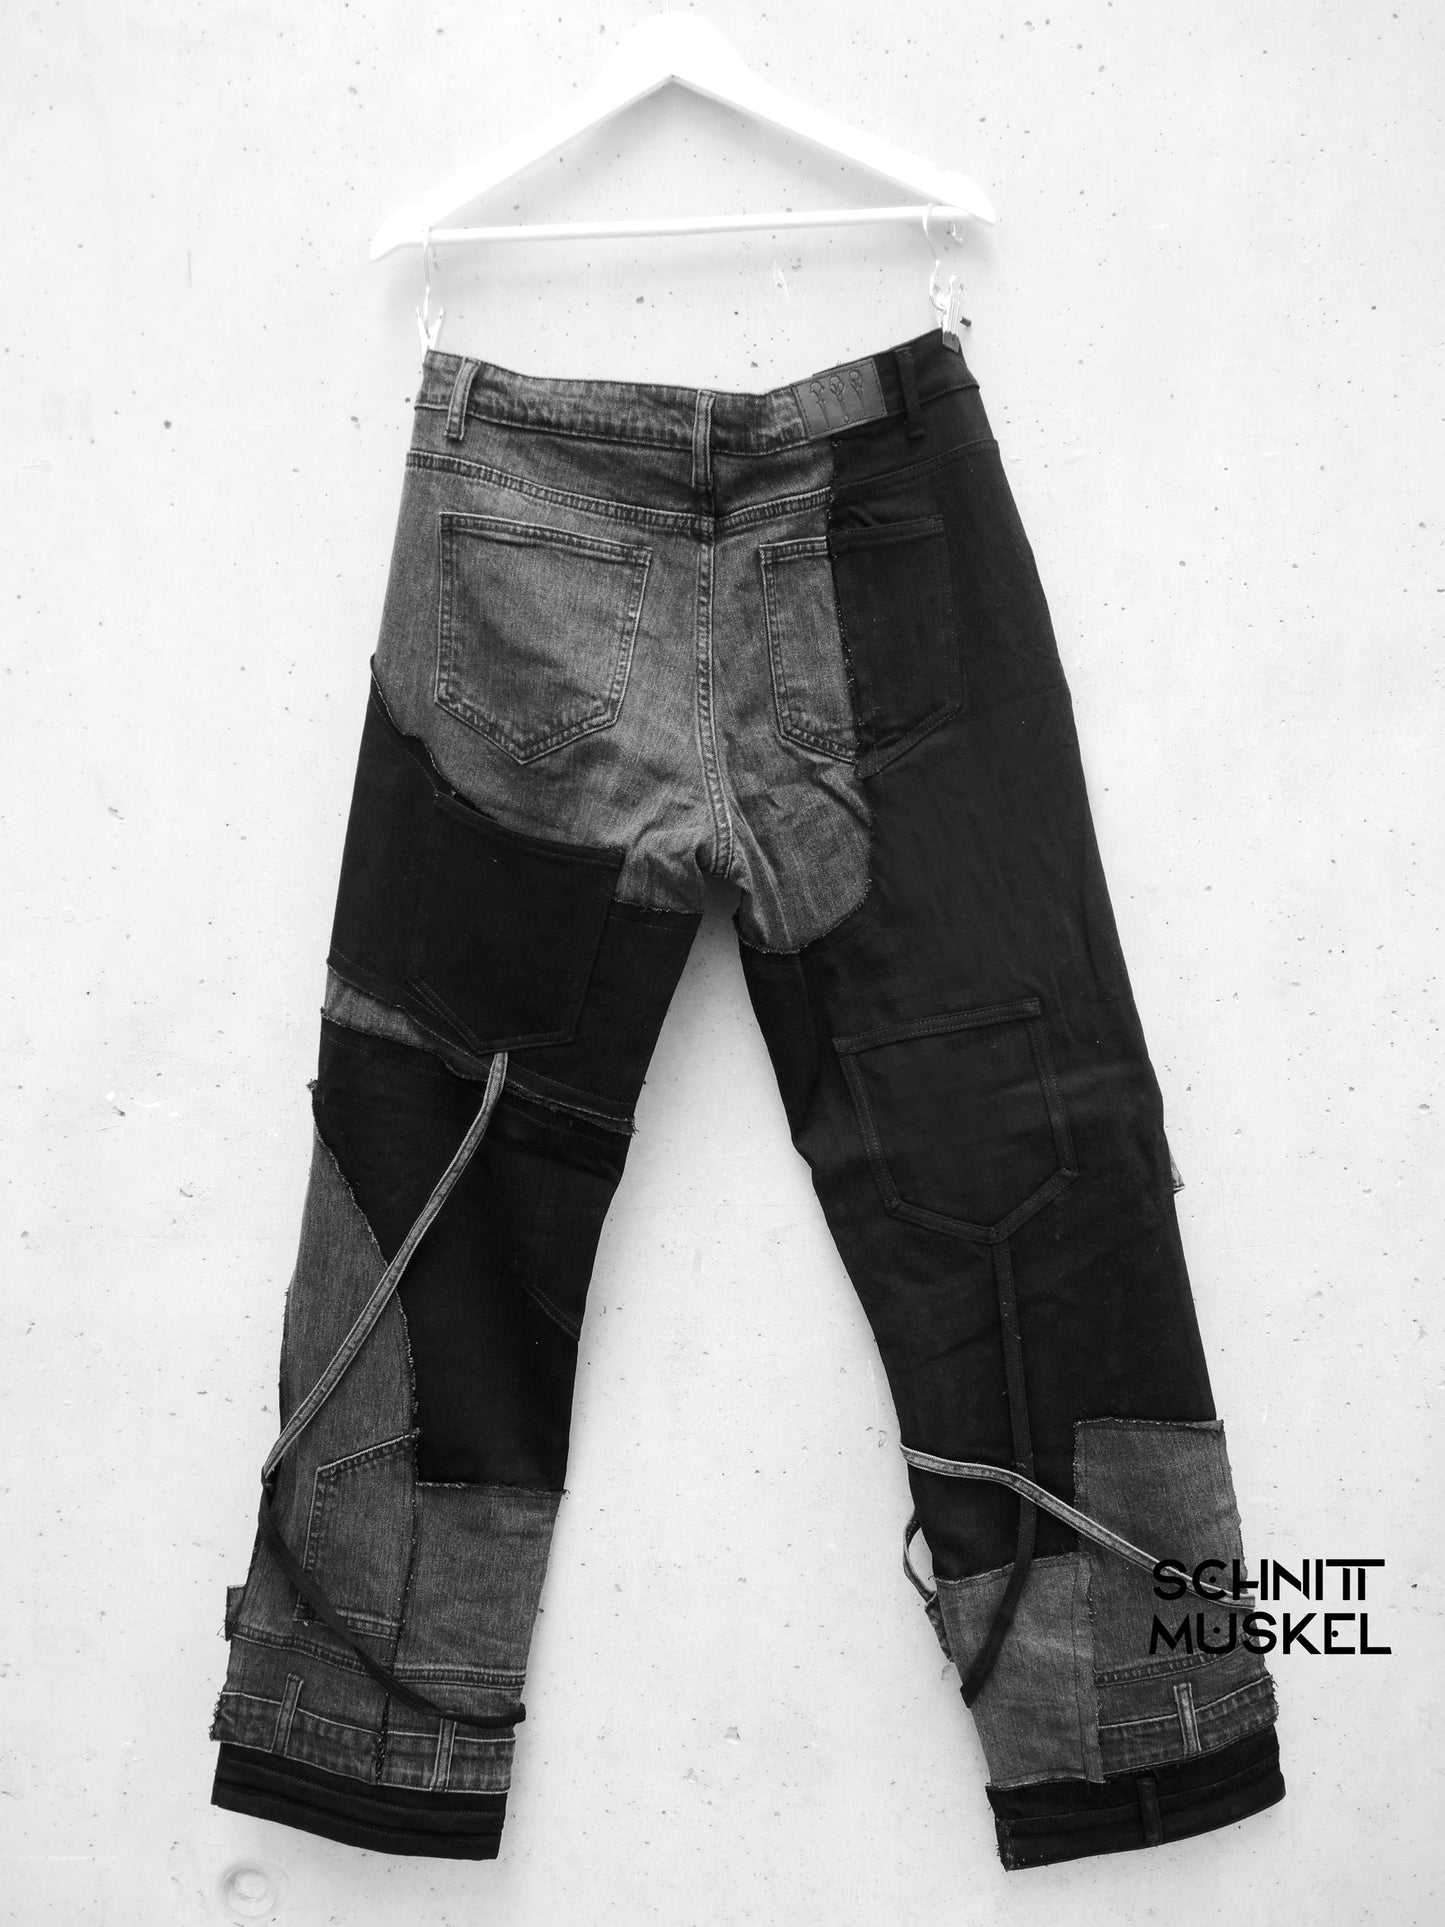 patchwork Jeans, upcycling jeans, Gothicjeans, Gothicmode für Männer, postapokalyptische Mode, Cyberjeans, Cyberhose, Hose mit Gurten, aussergewöhnliche Jeans